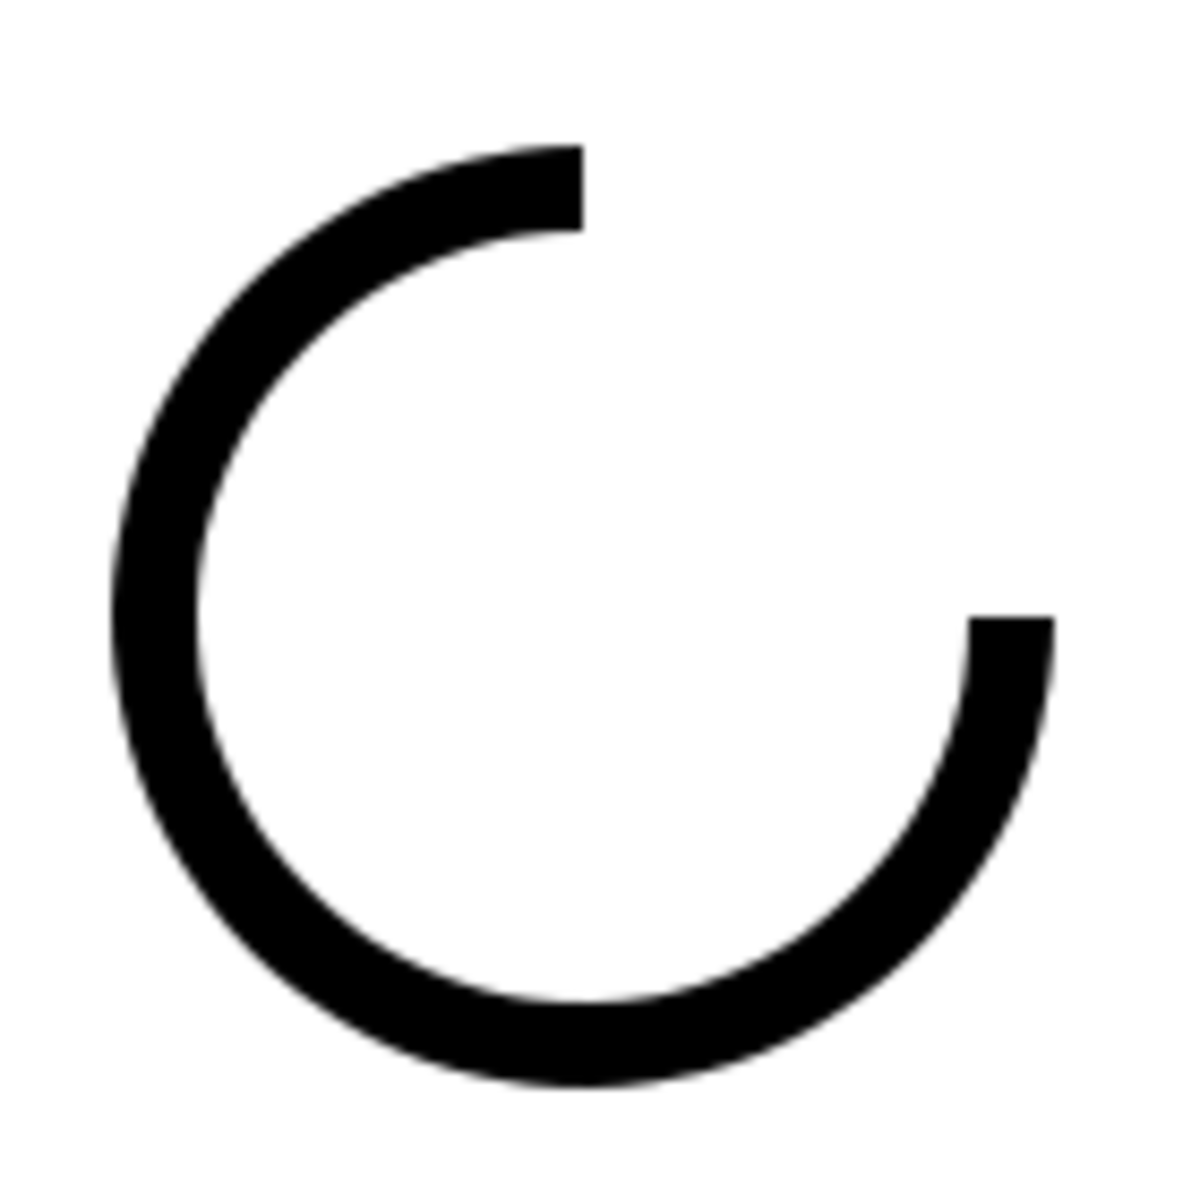 html5-tutorial-drawing-circles-and-arcs